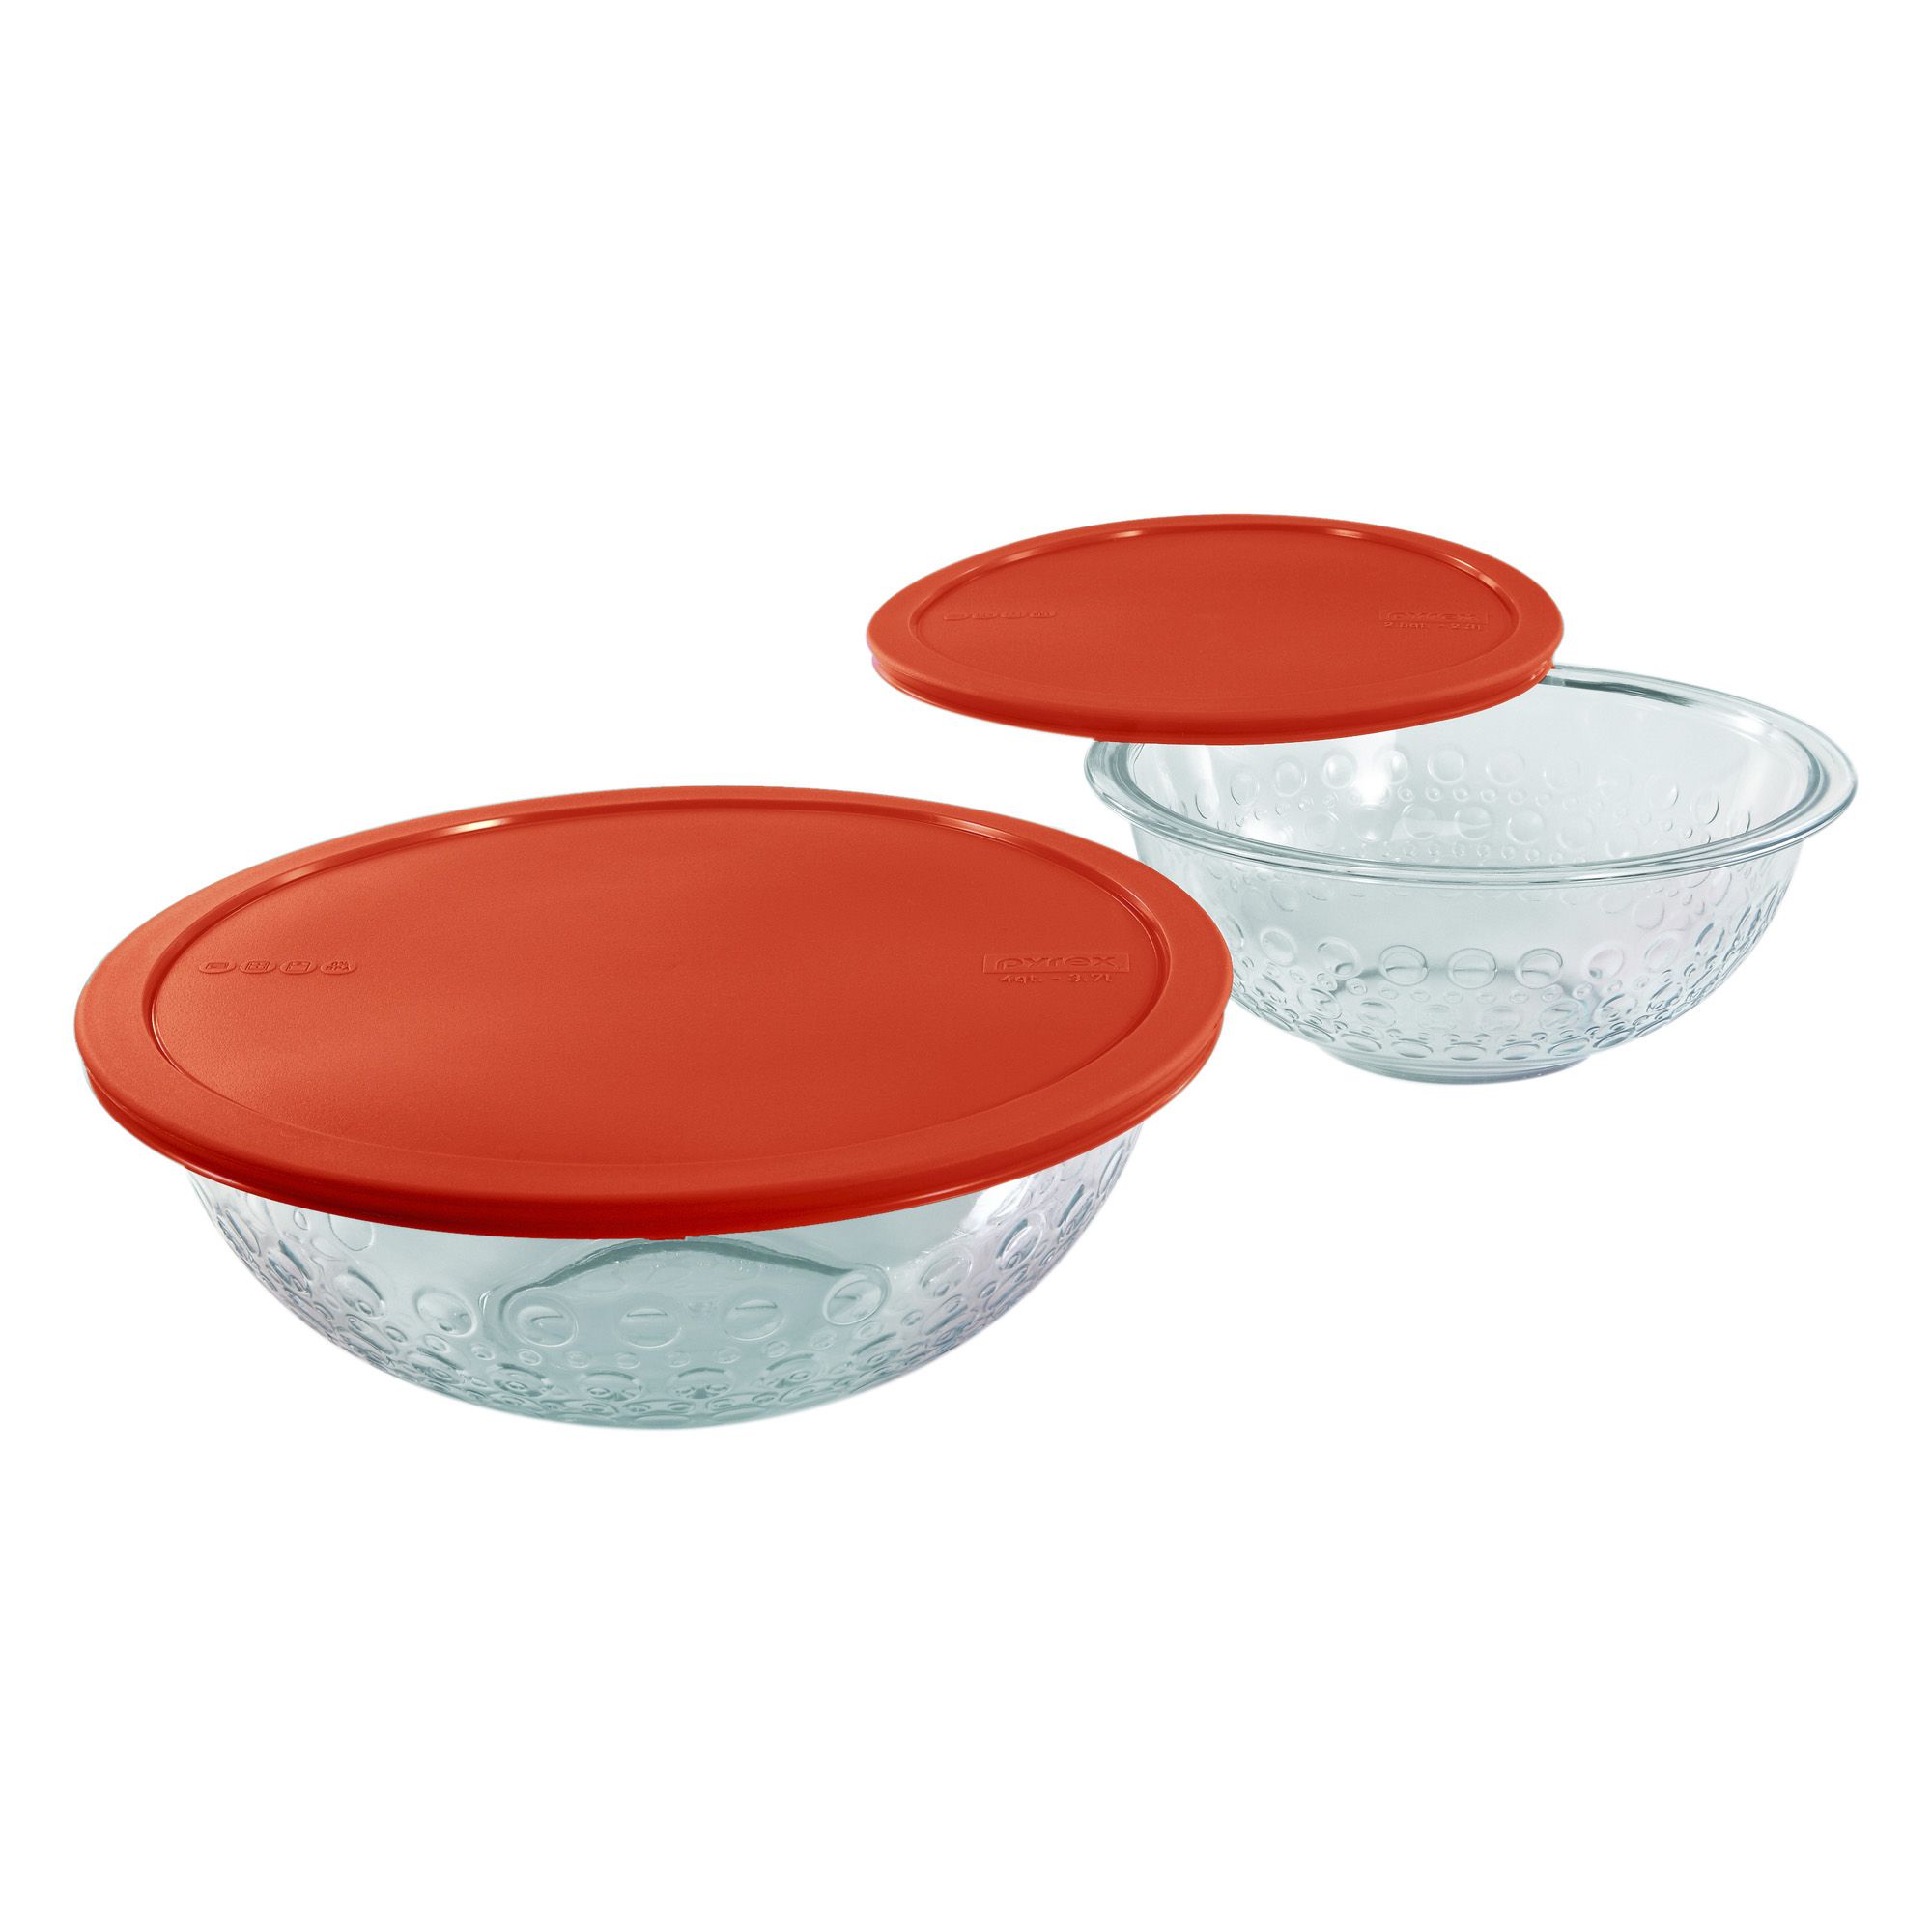 Fingerhut - Pyrex 5-Pc. Glass Bakeware Set